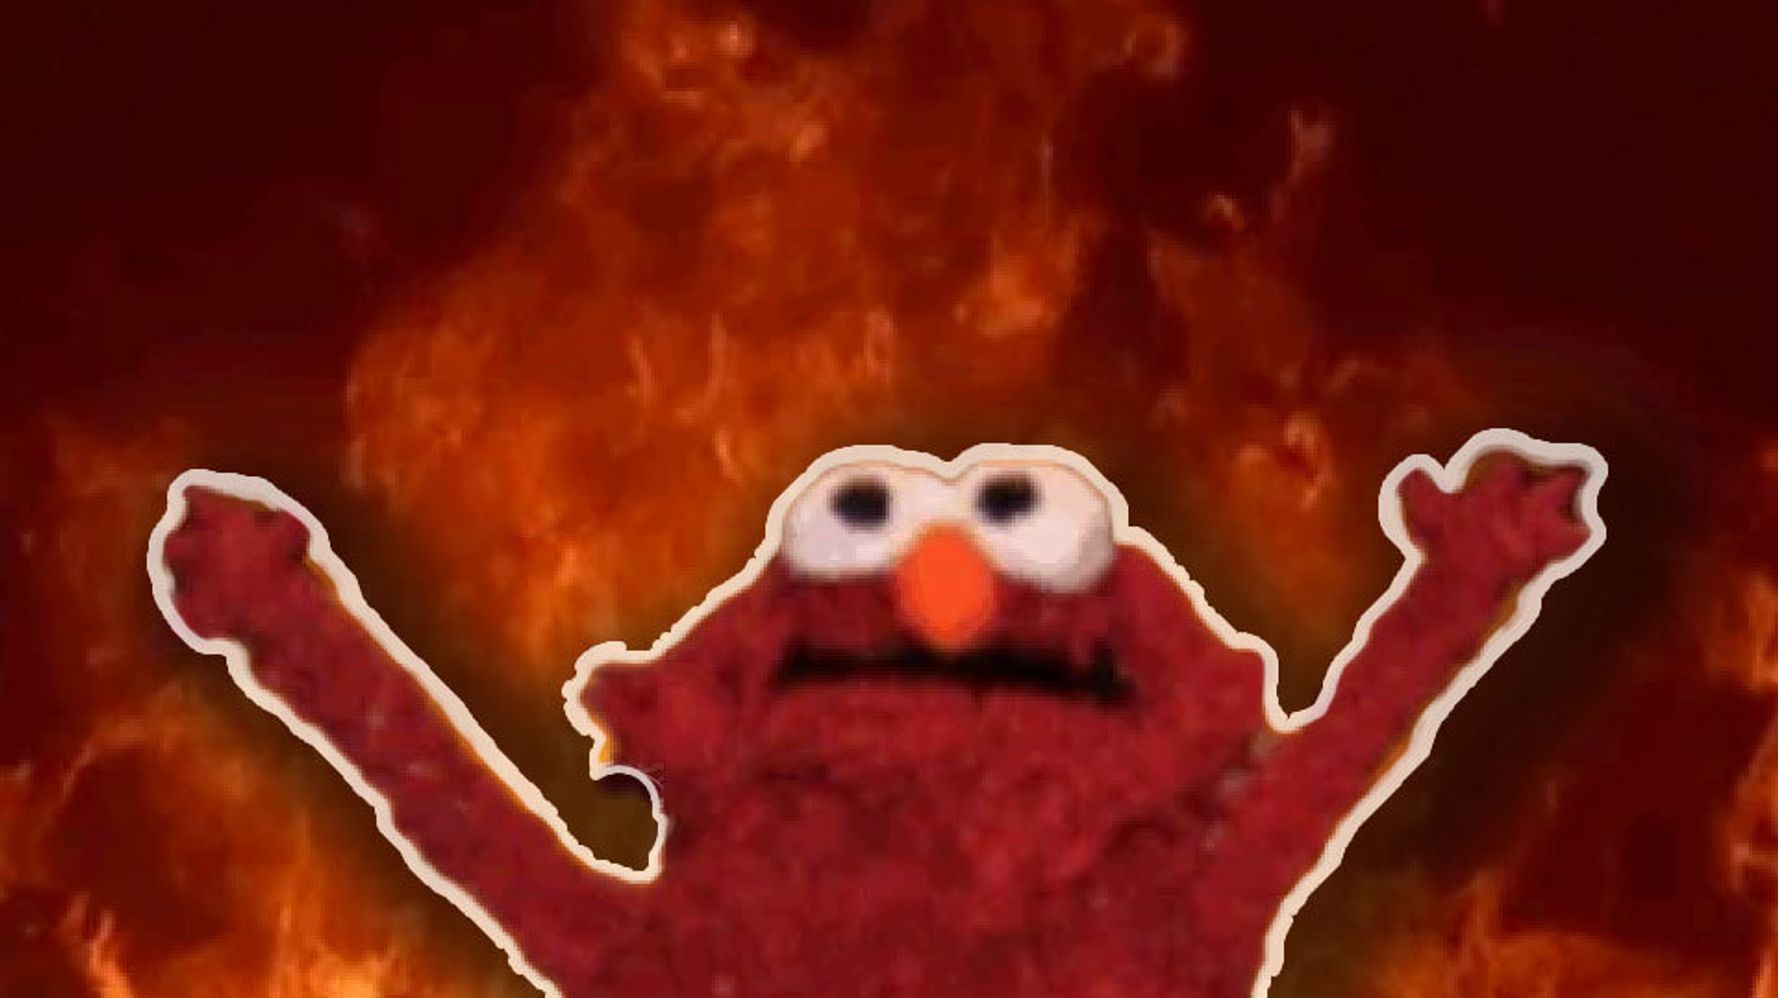 Download Meme Elmo Fire | PNG & GIF BASE